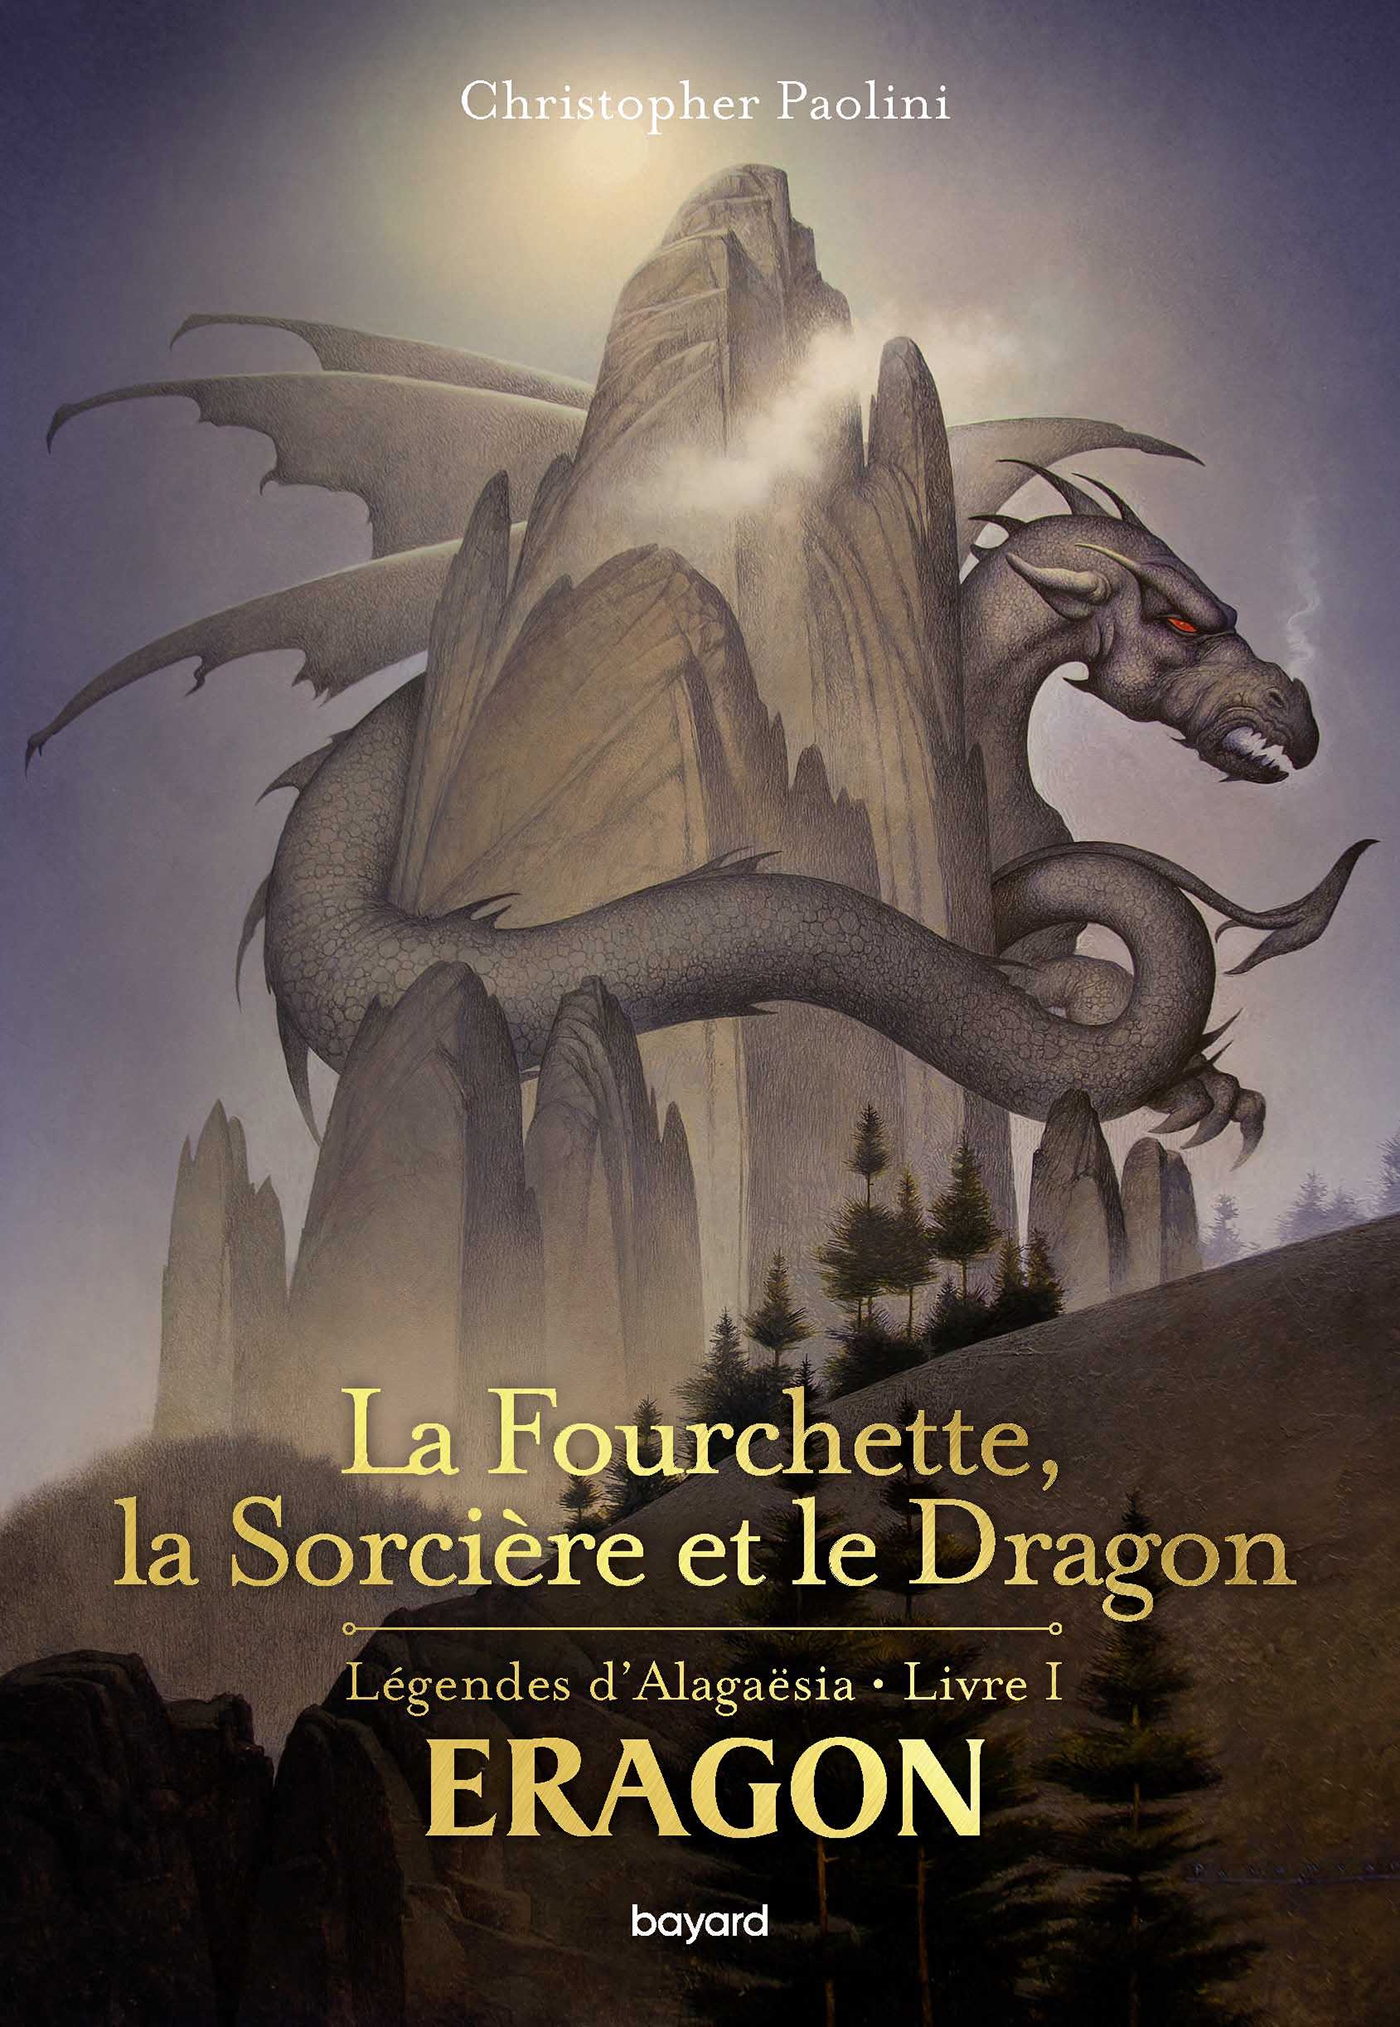 Eragon : La fourchette, la sorcière et le dragon